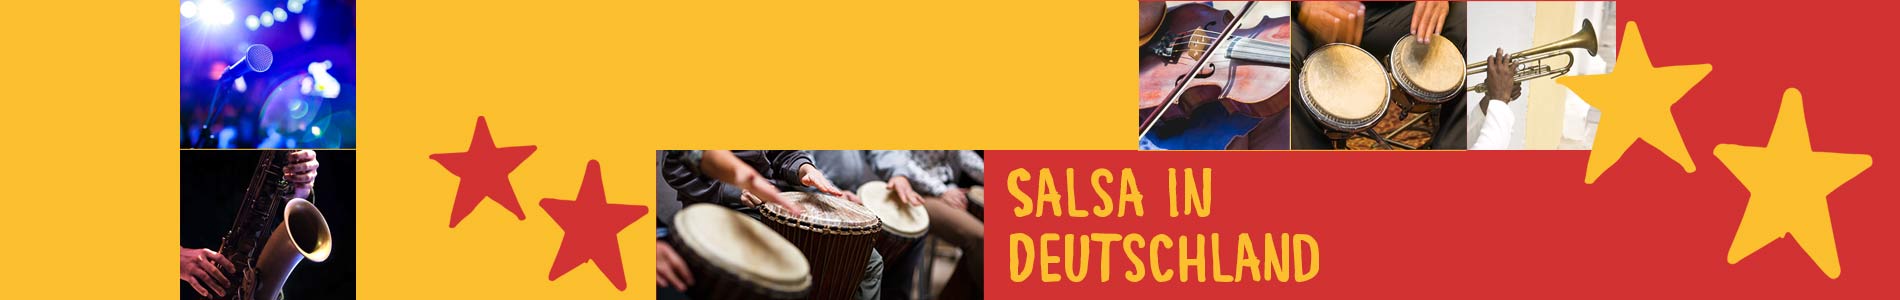 Salsa in Breiholz – Salsa lernen und tanzen, Tanzkurse, Partys, Veranstaltungen